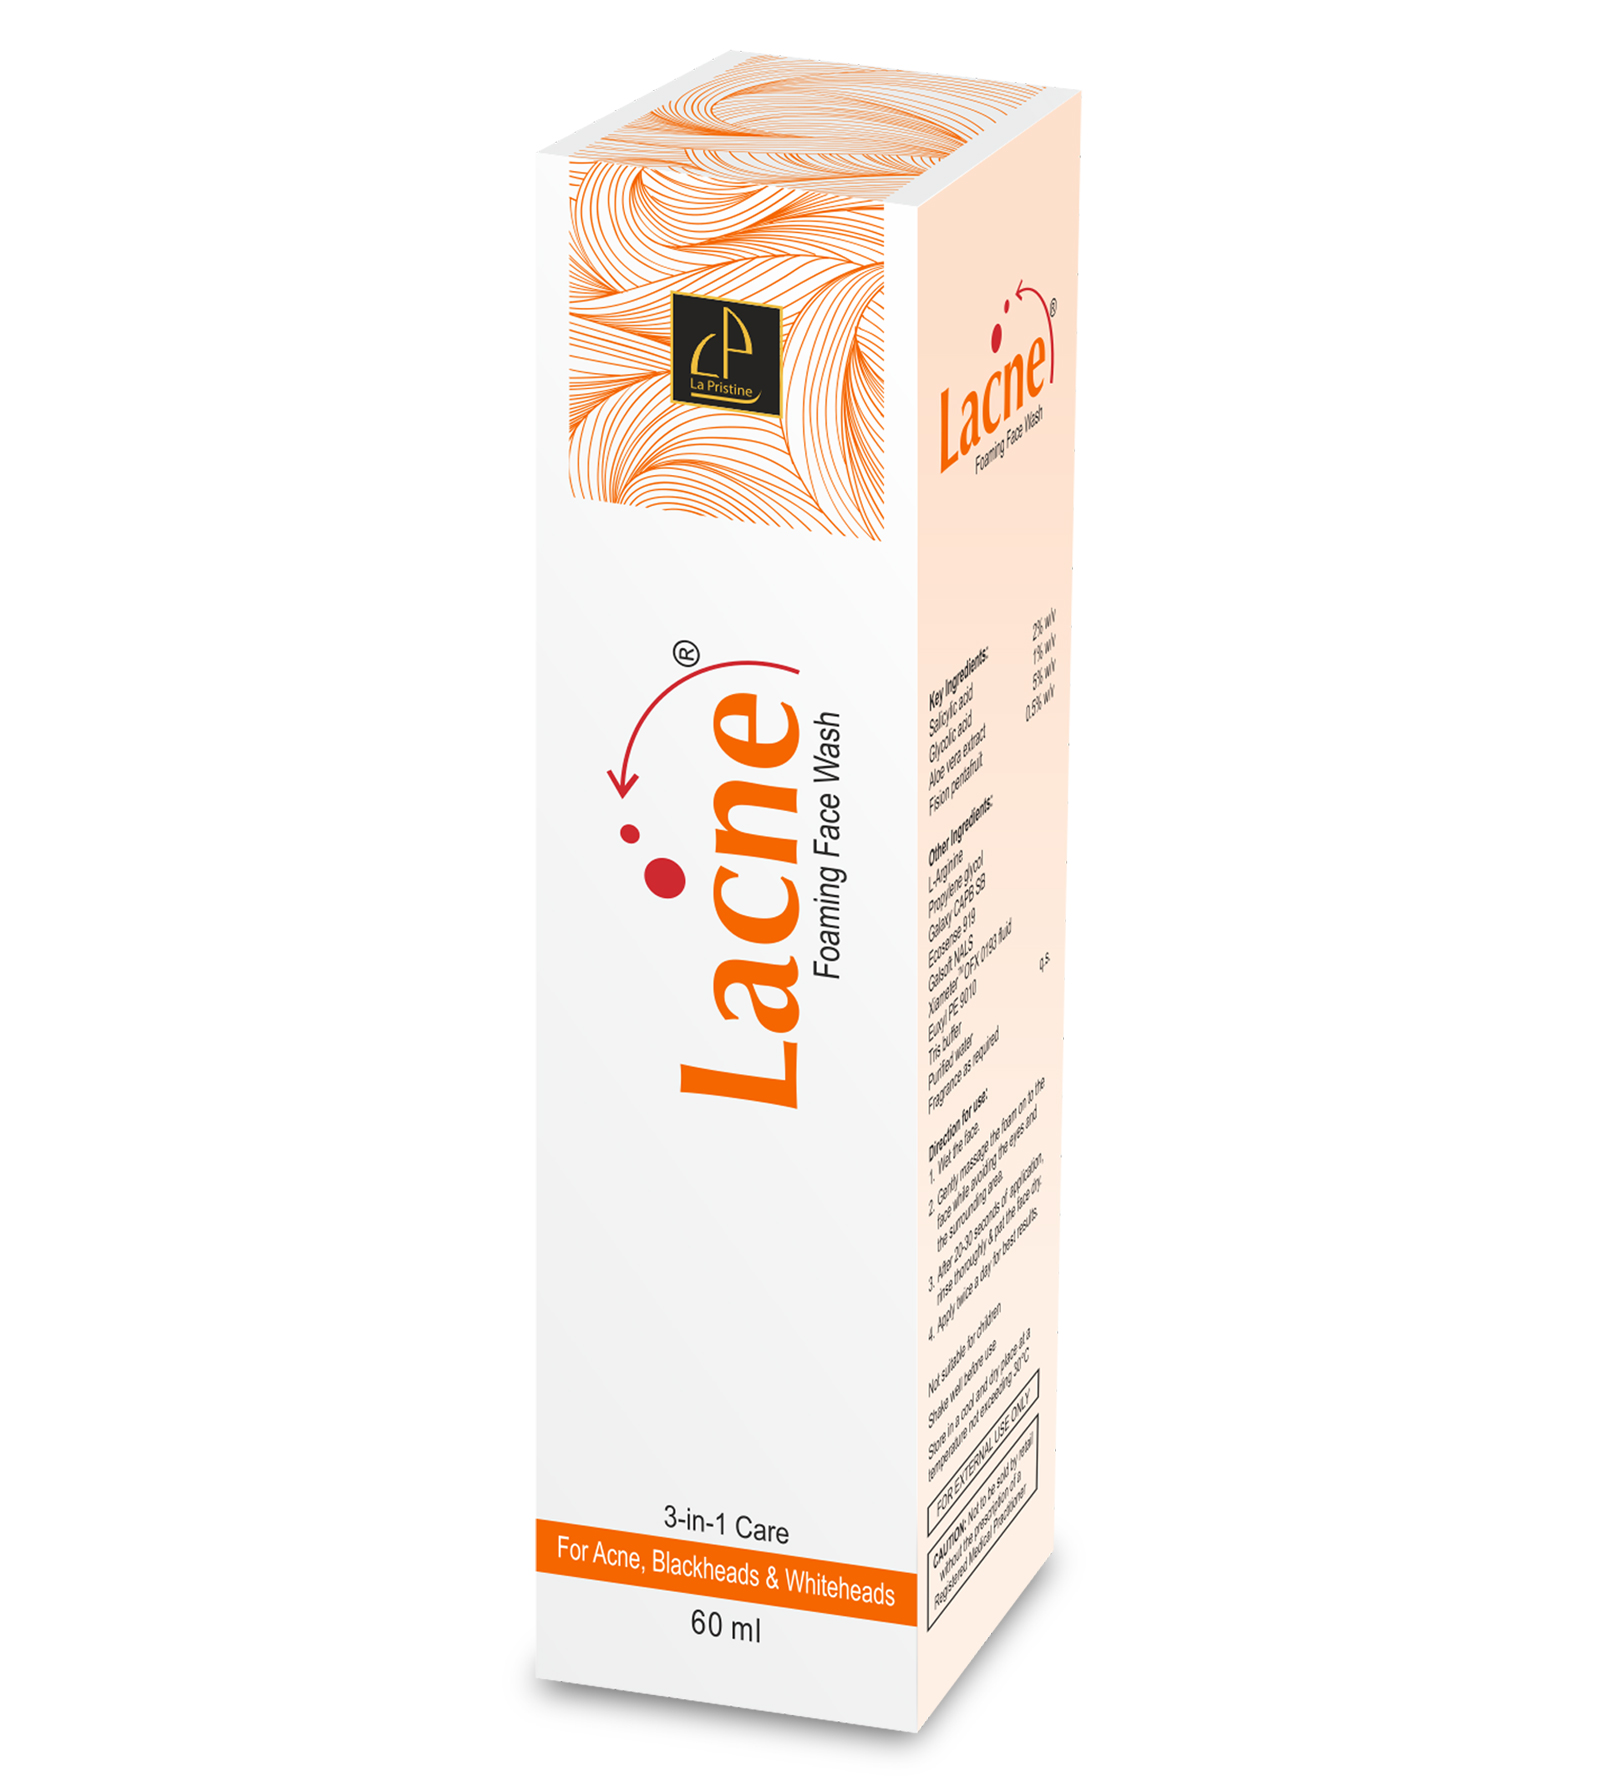 Lacne Foaming Face Wash 60 ml